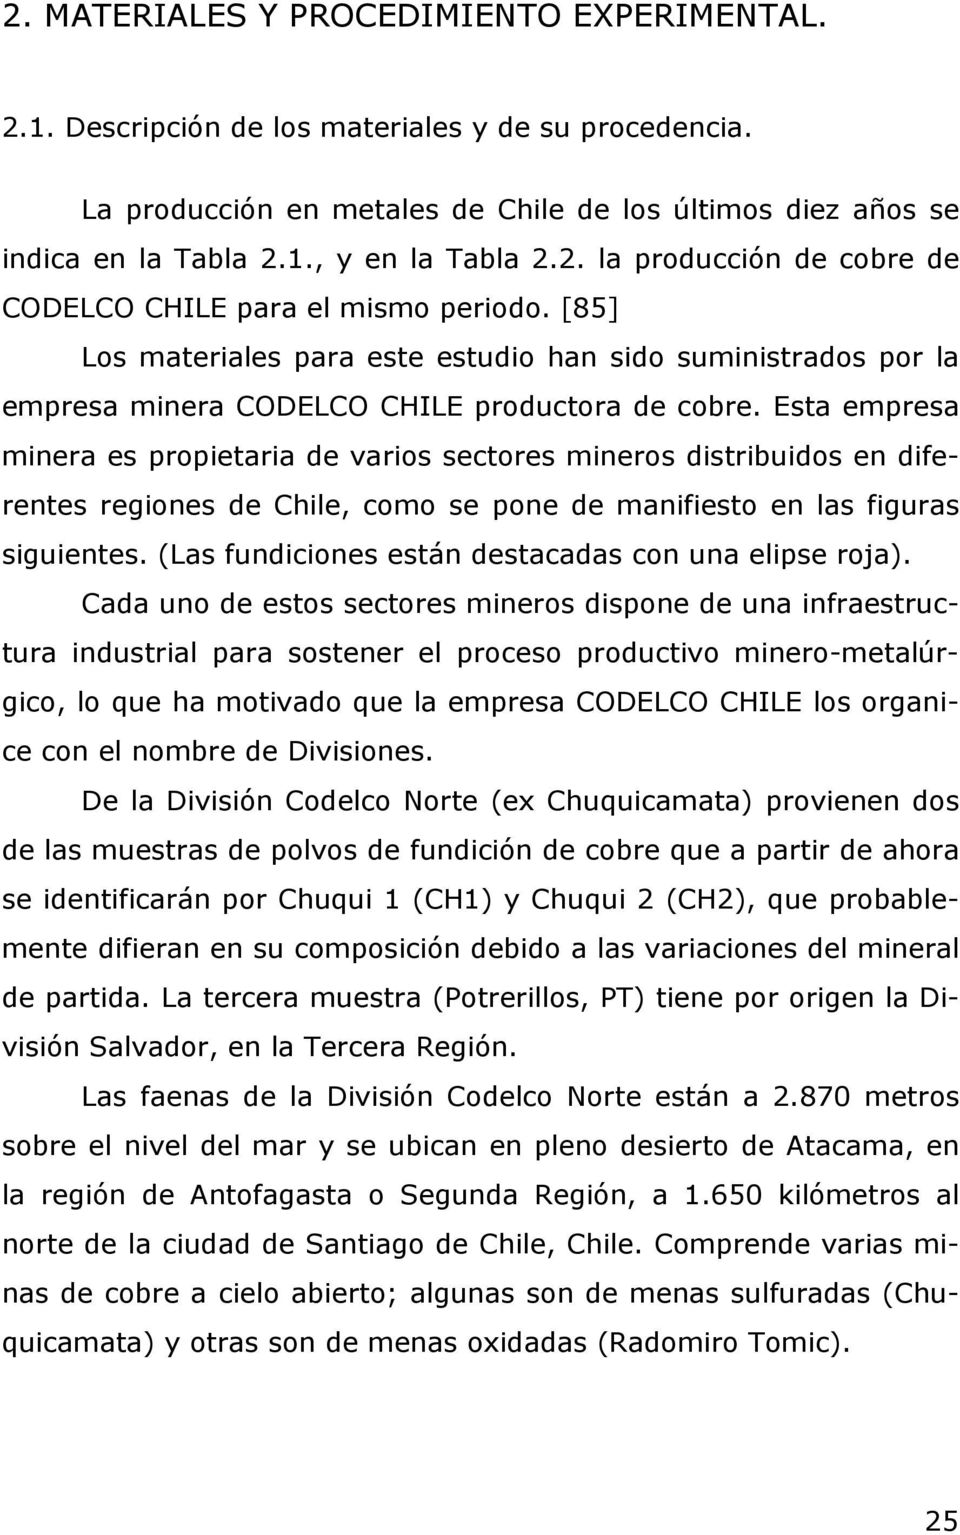 Esta empresa minera es propietaria de varios sectores mineros distribuidos en diferentes regiones de Chile, como se pone de manifiesto en las figuras siguientes.